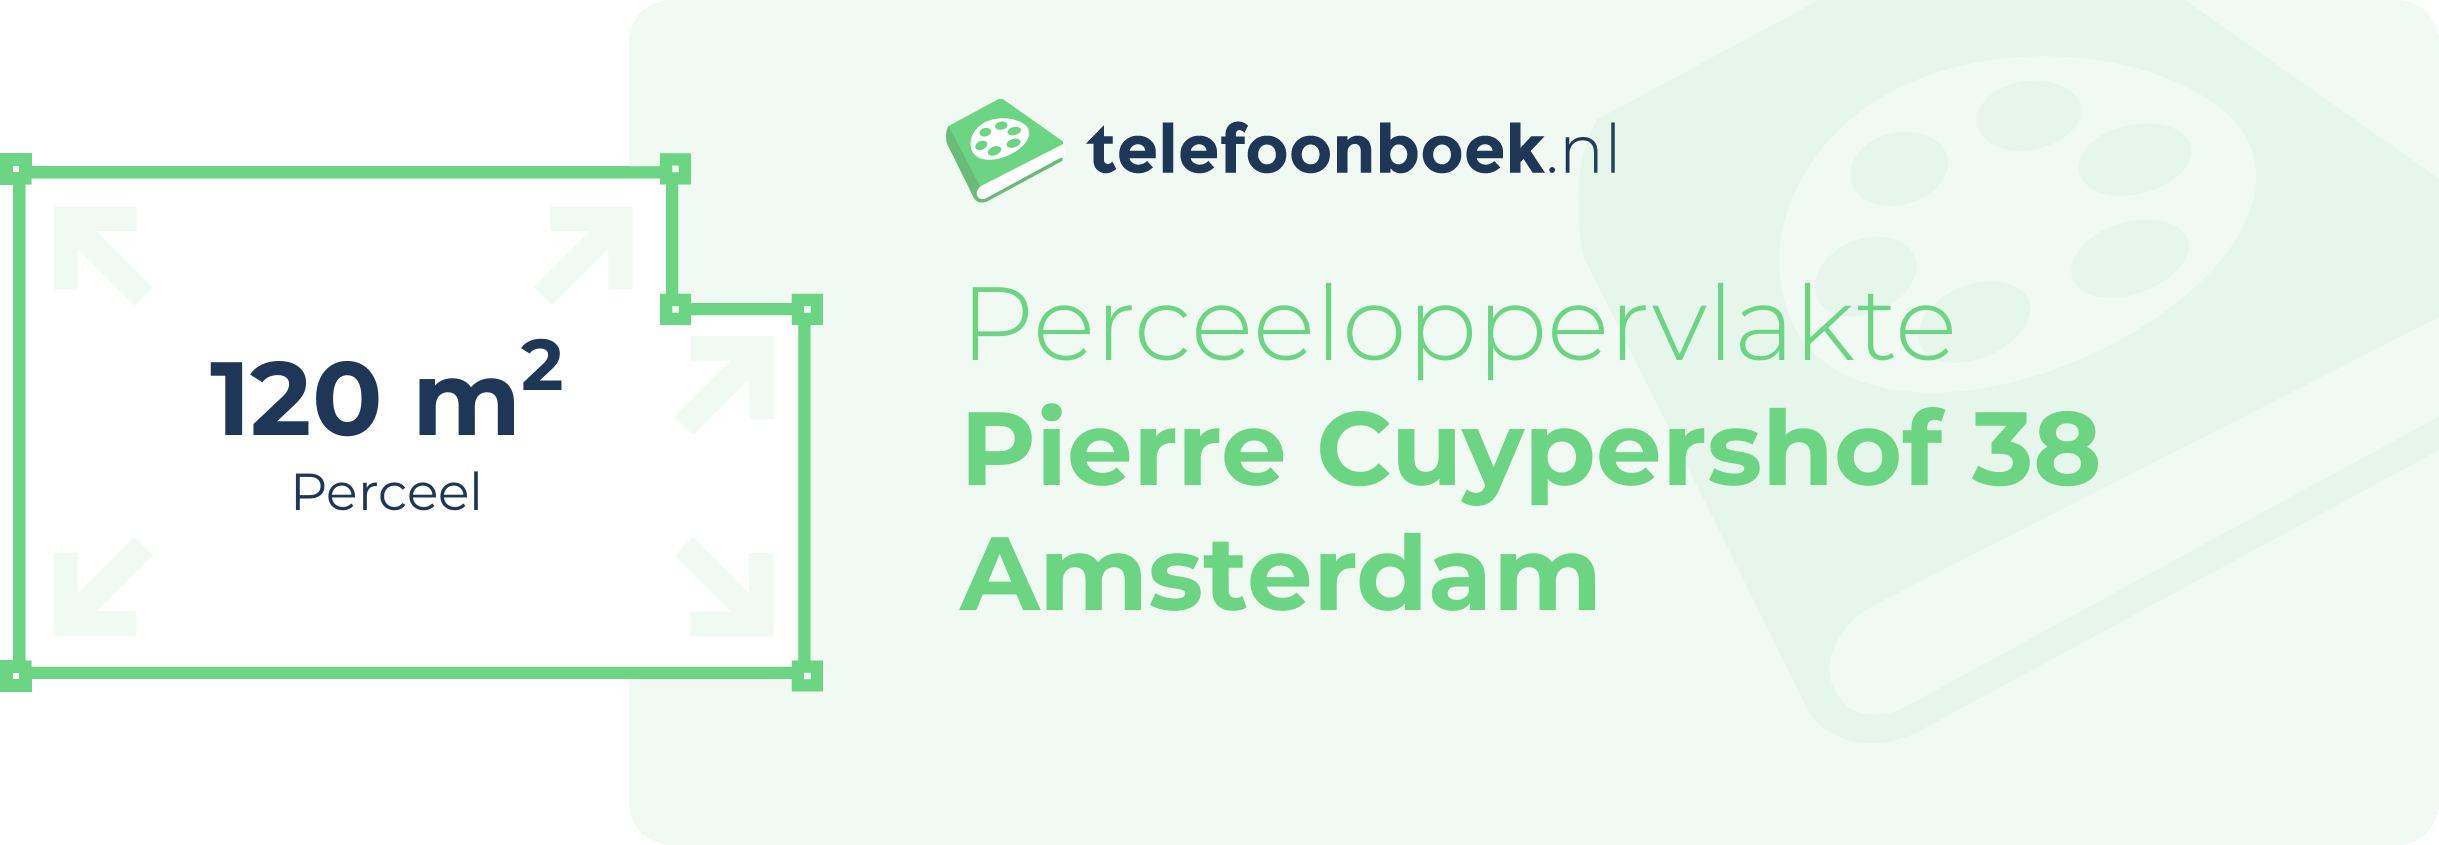 Perceeloppervlakte Pierre Cuypershof 38 Amsterdam